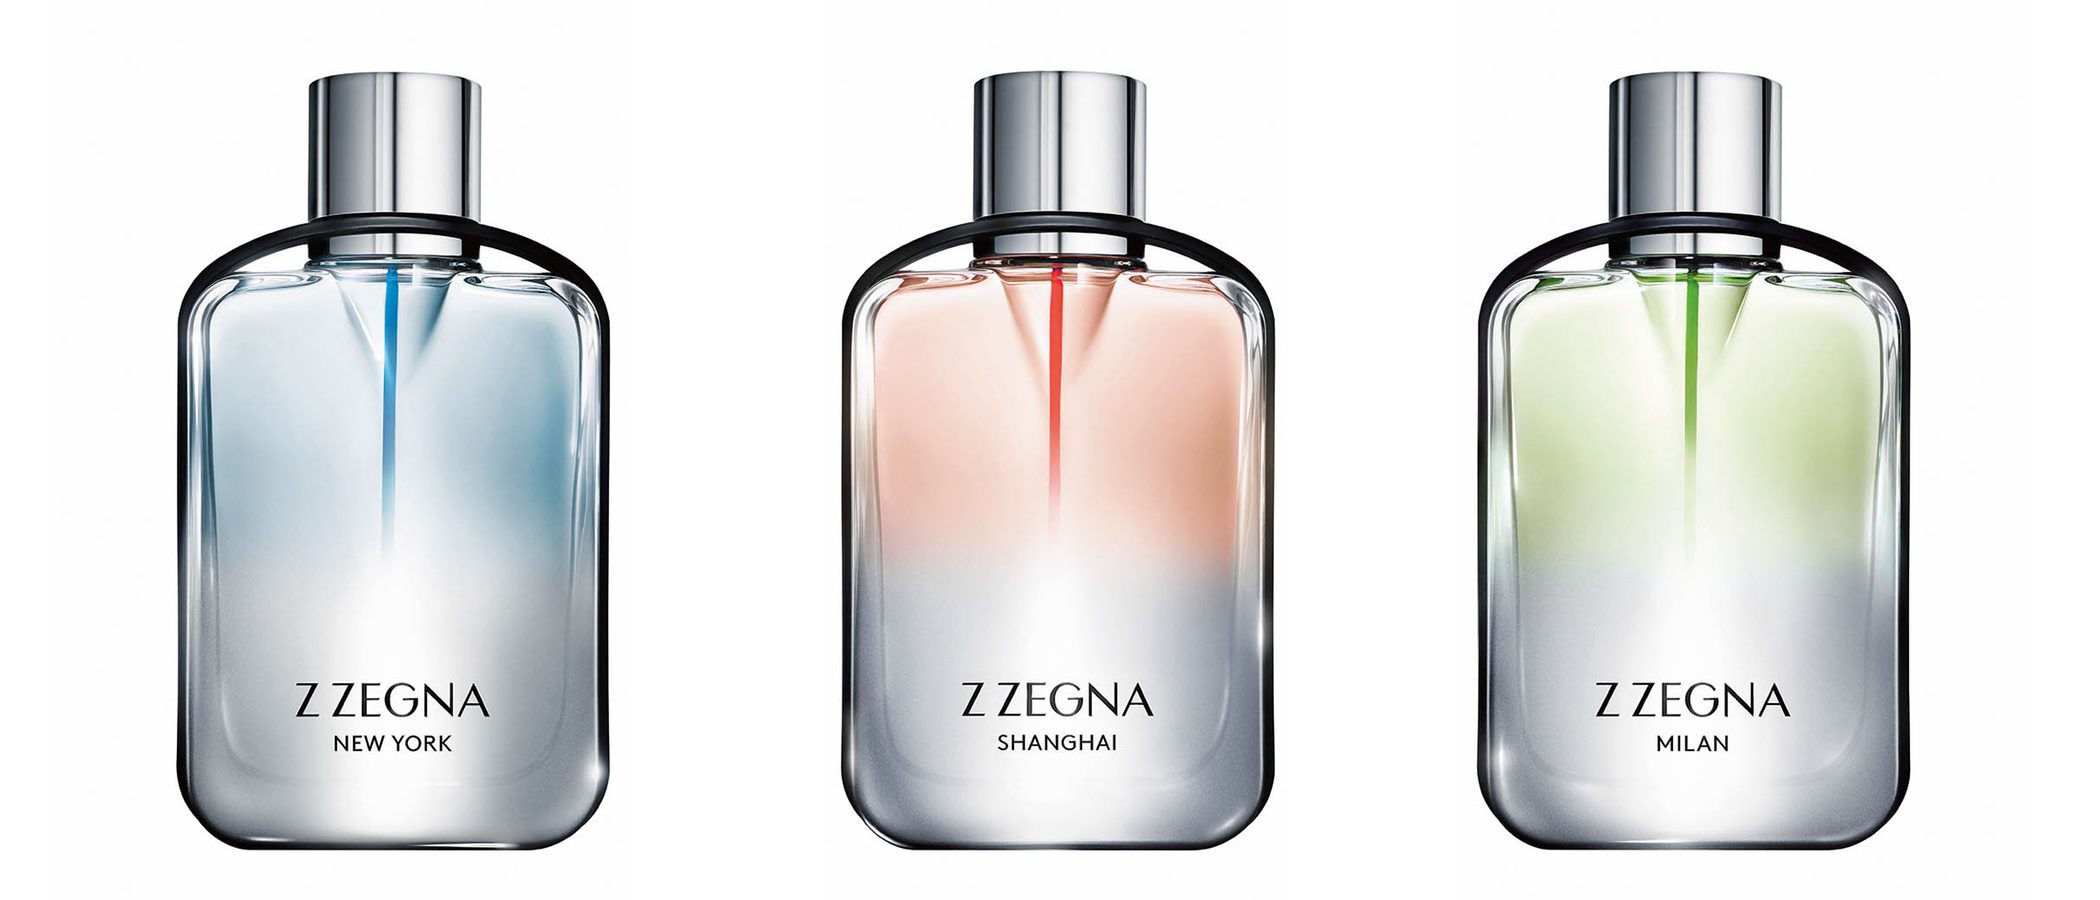 Z Zegna nos hace viajar con sus nuevos perfumes 'Z Zegna Cities'